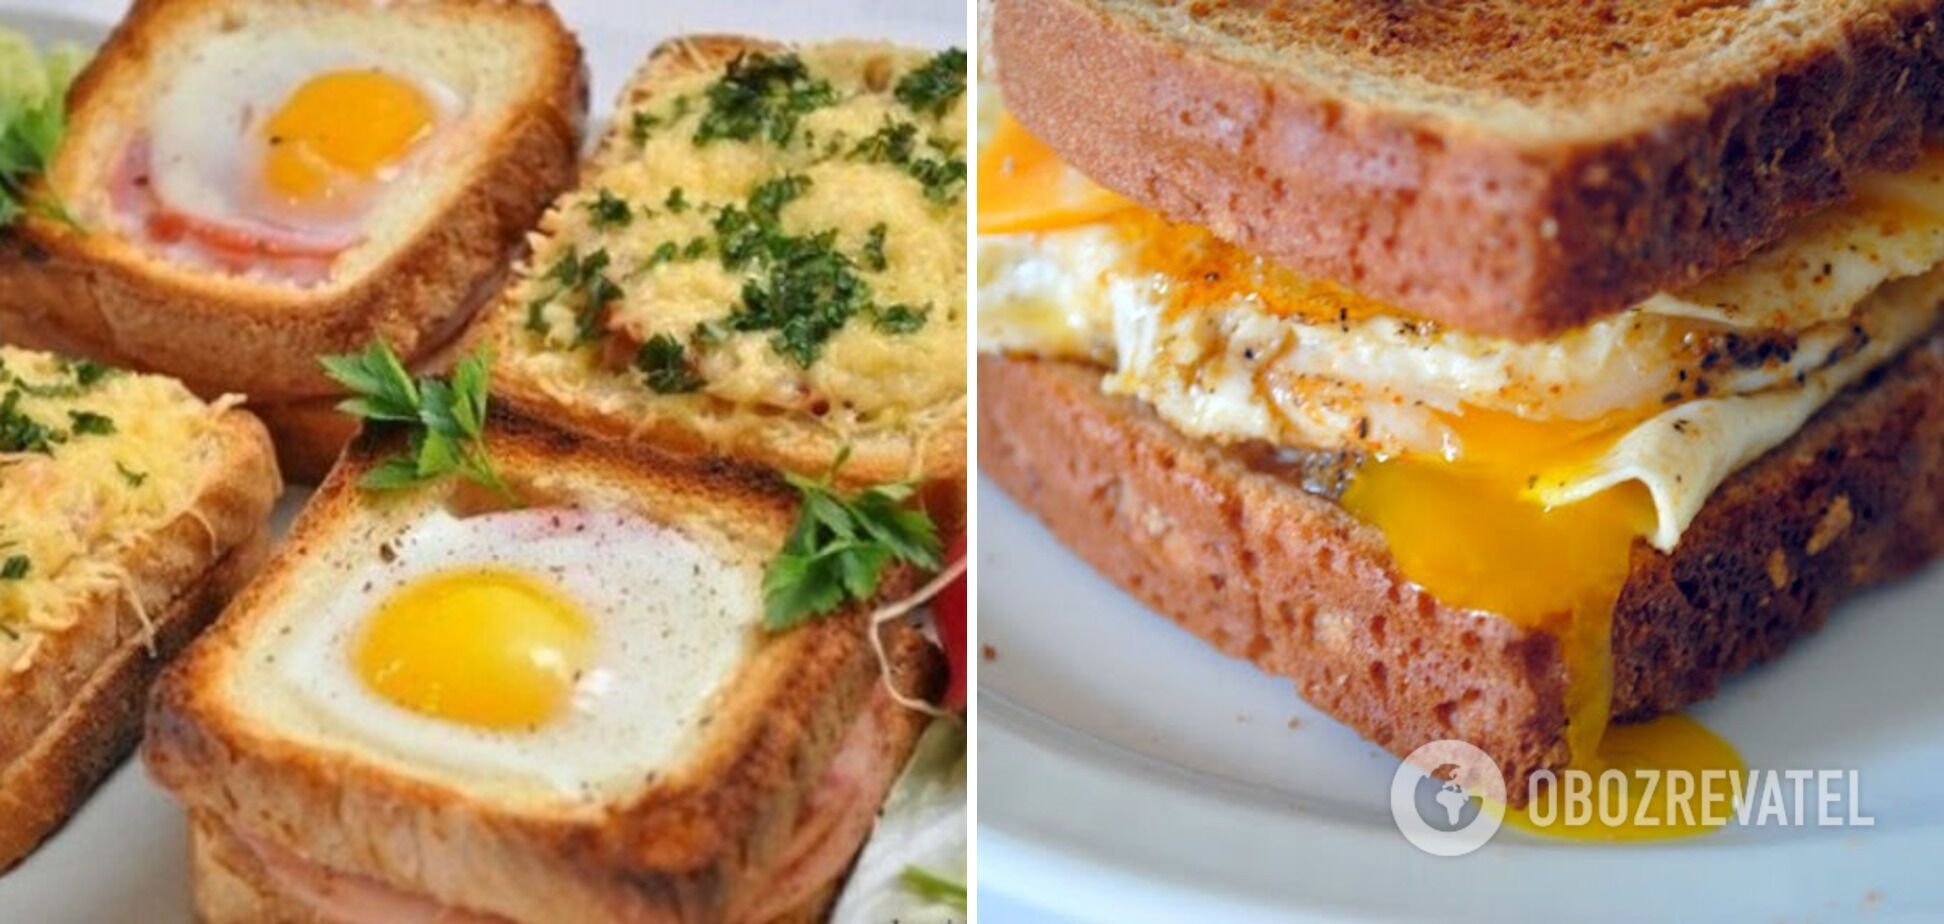 Egg sandwiches for breakfast